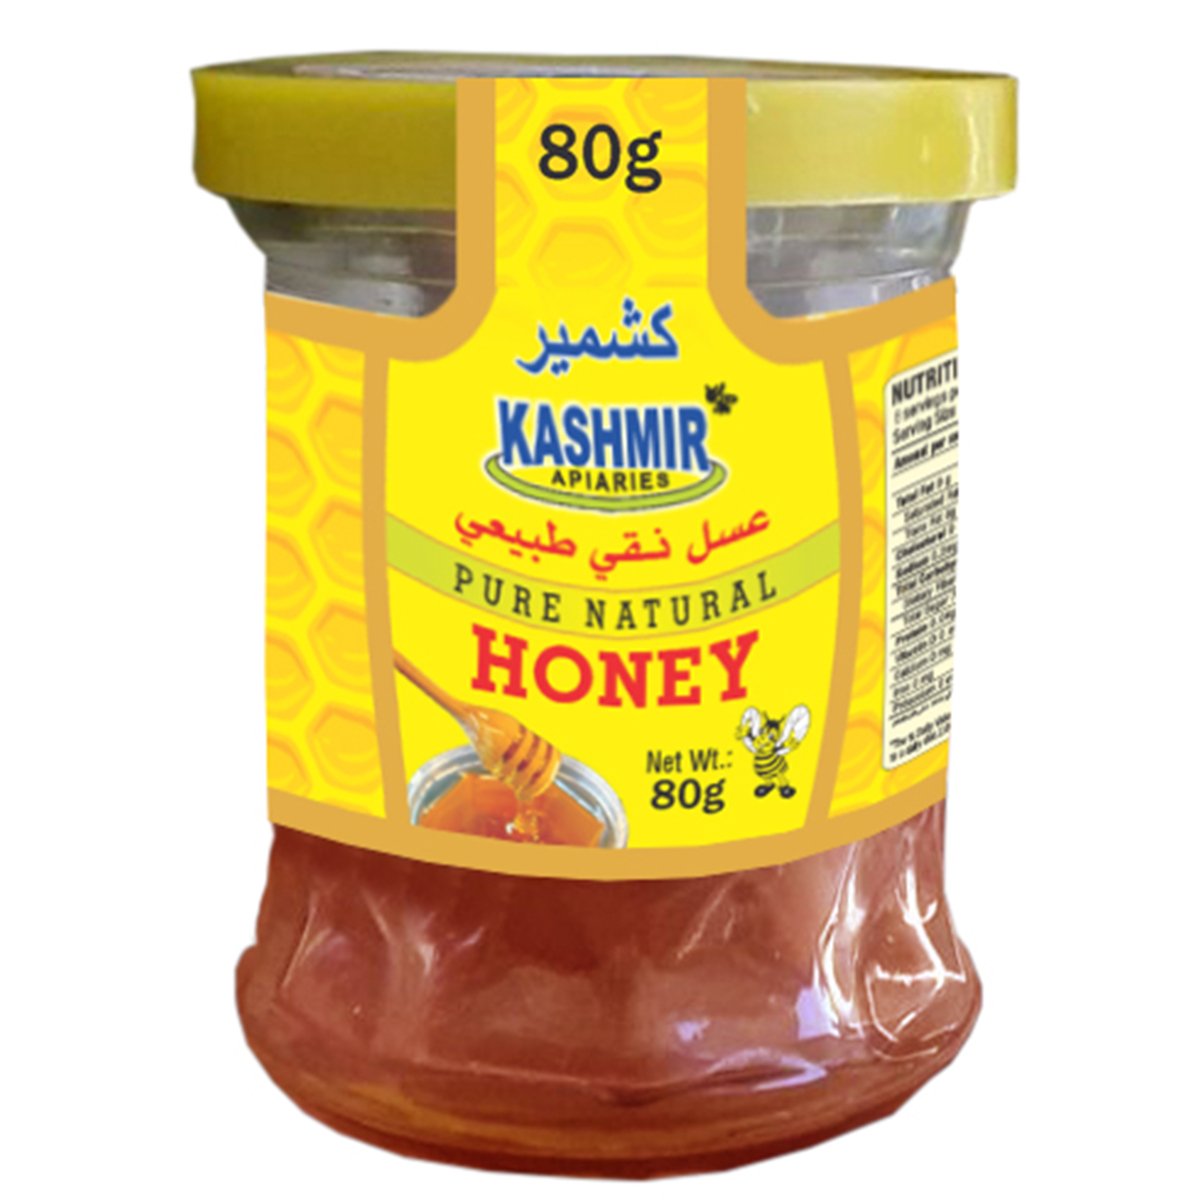 Buy Kashmir Pure Natural Honey 80g Online at Best Price | Honey | Lulu Kuwait in Kuwait